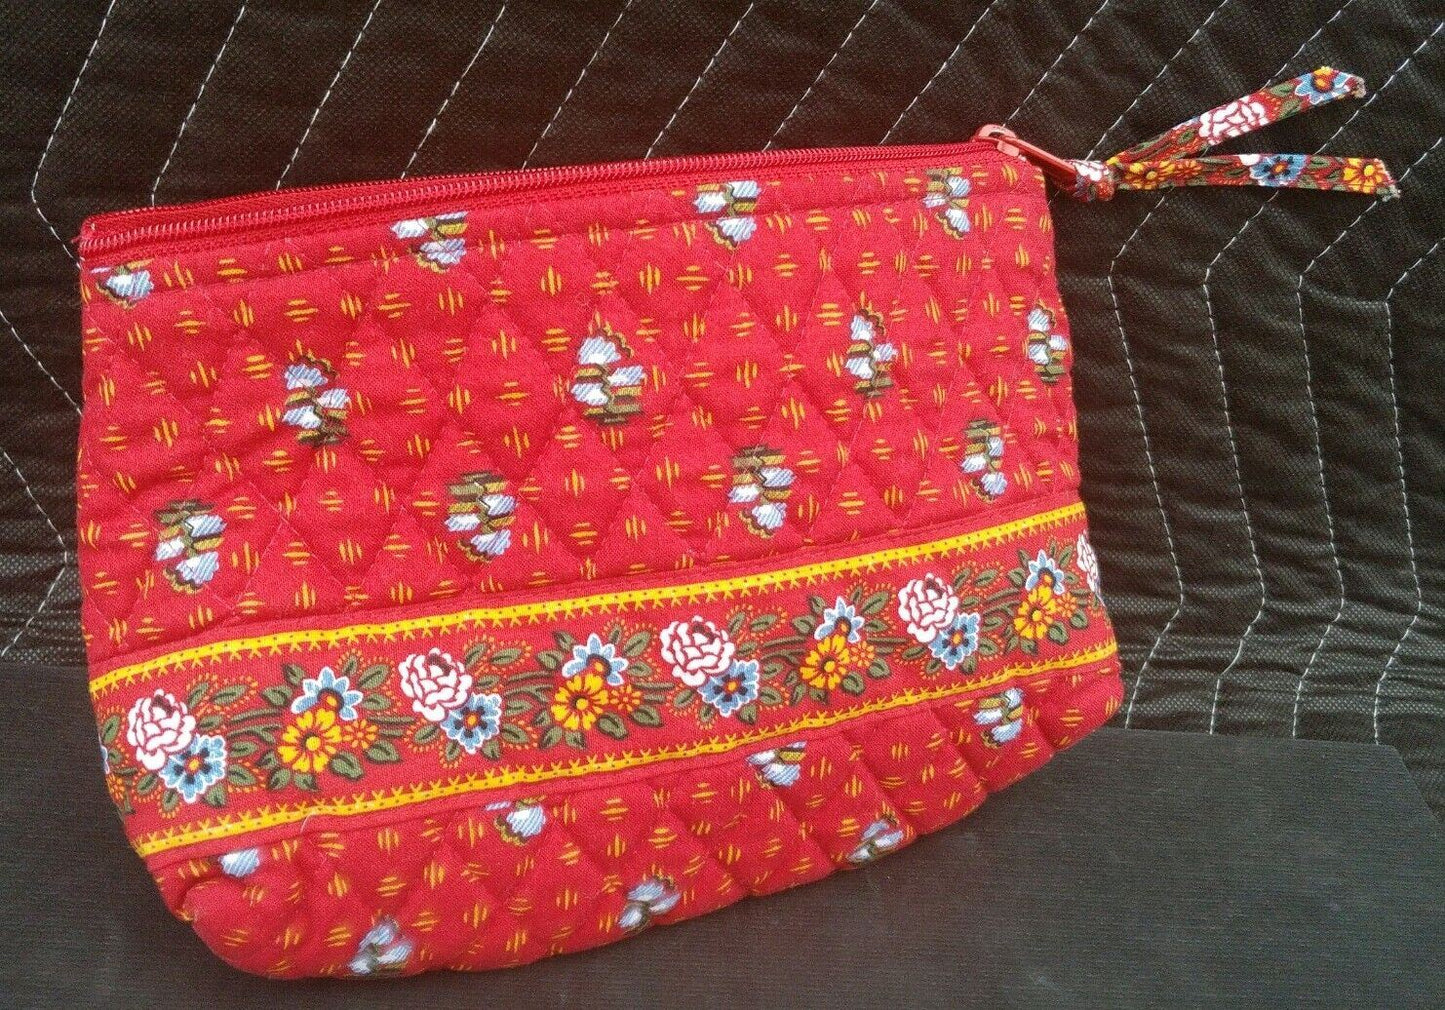 Vera Bradley Cosmetic Bag in Red w/ zipper closure